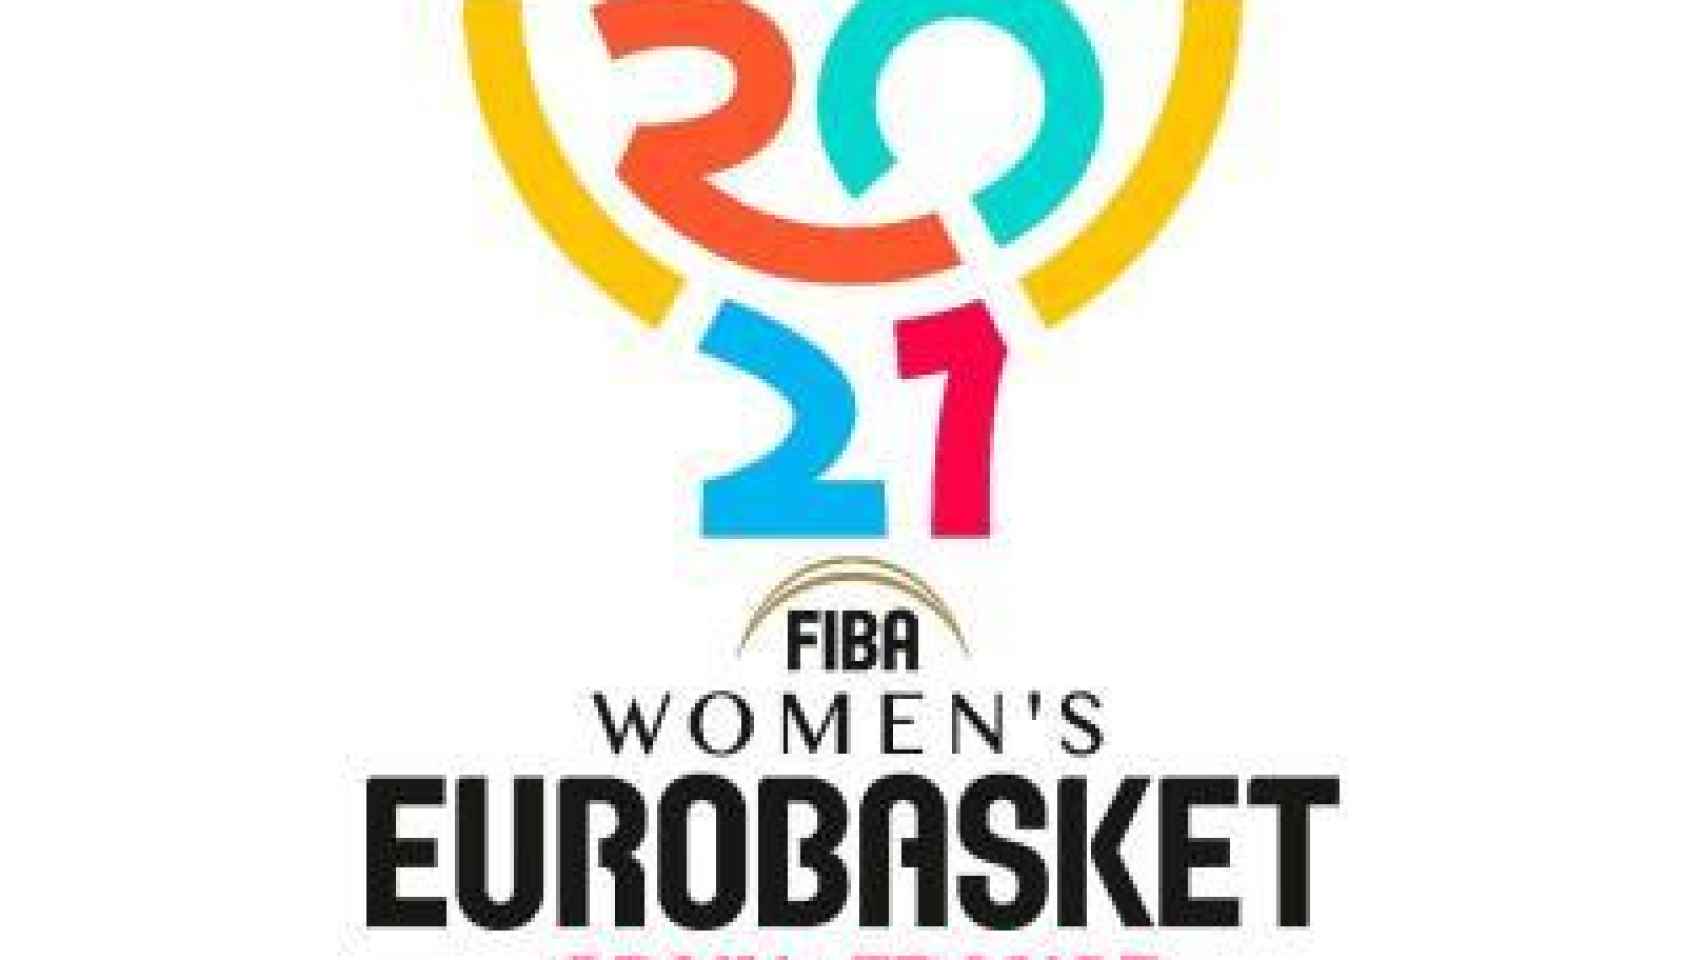 Valencia acogerá la fase final del Eurobasket Femenino en 2021